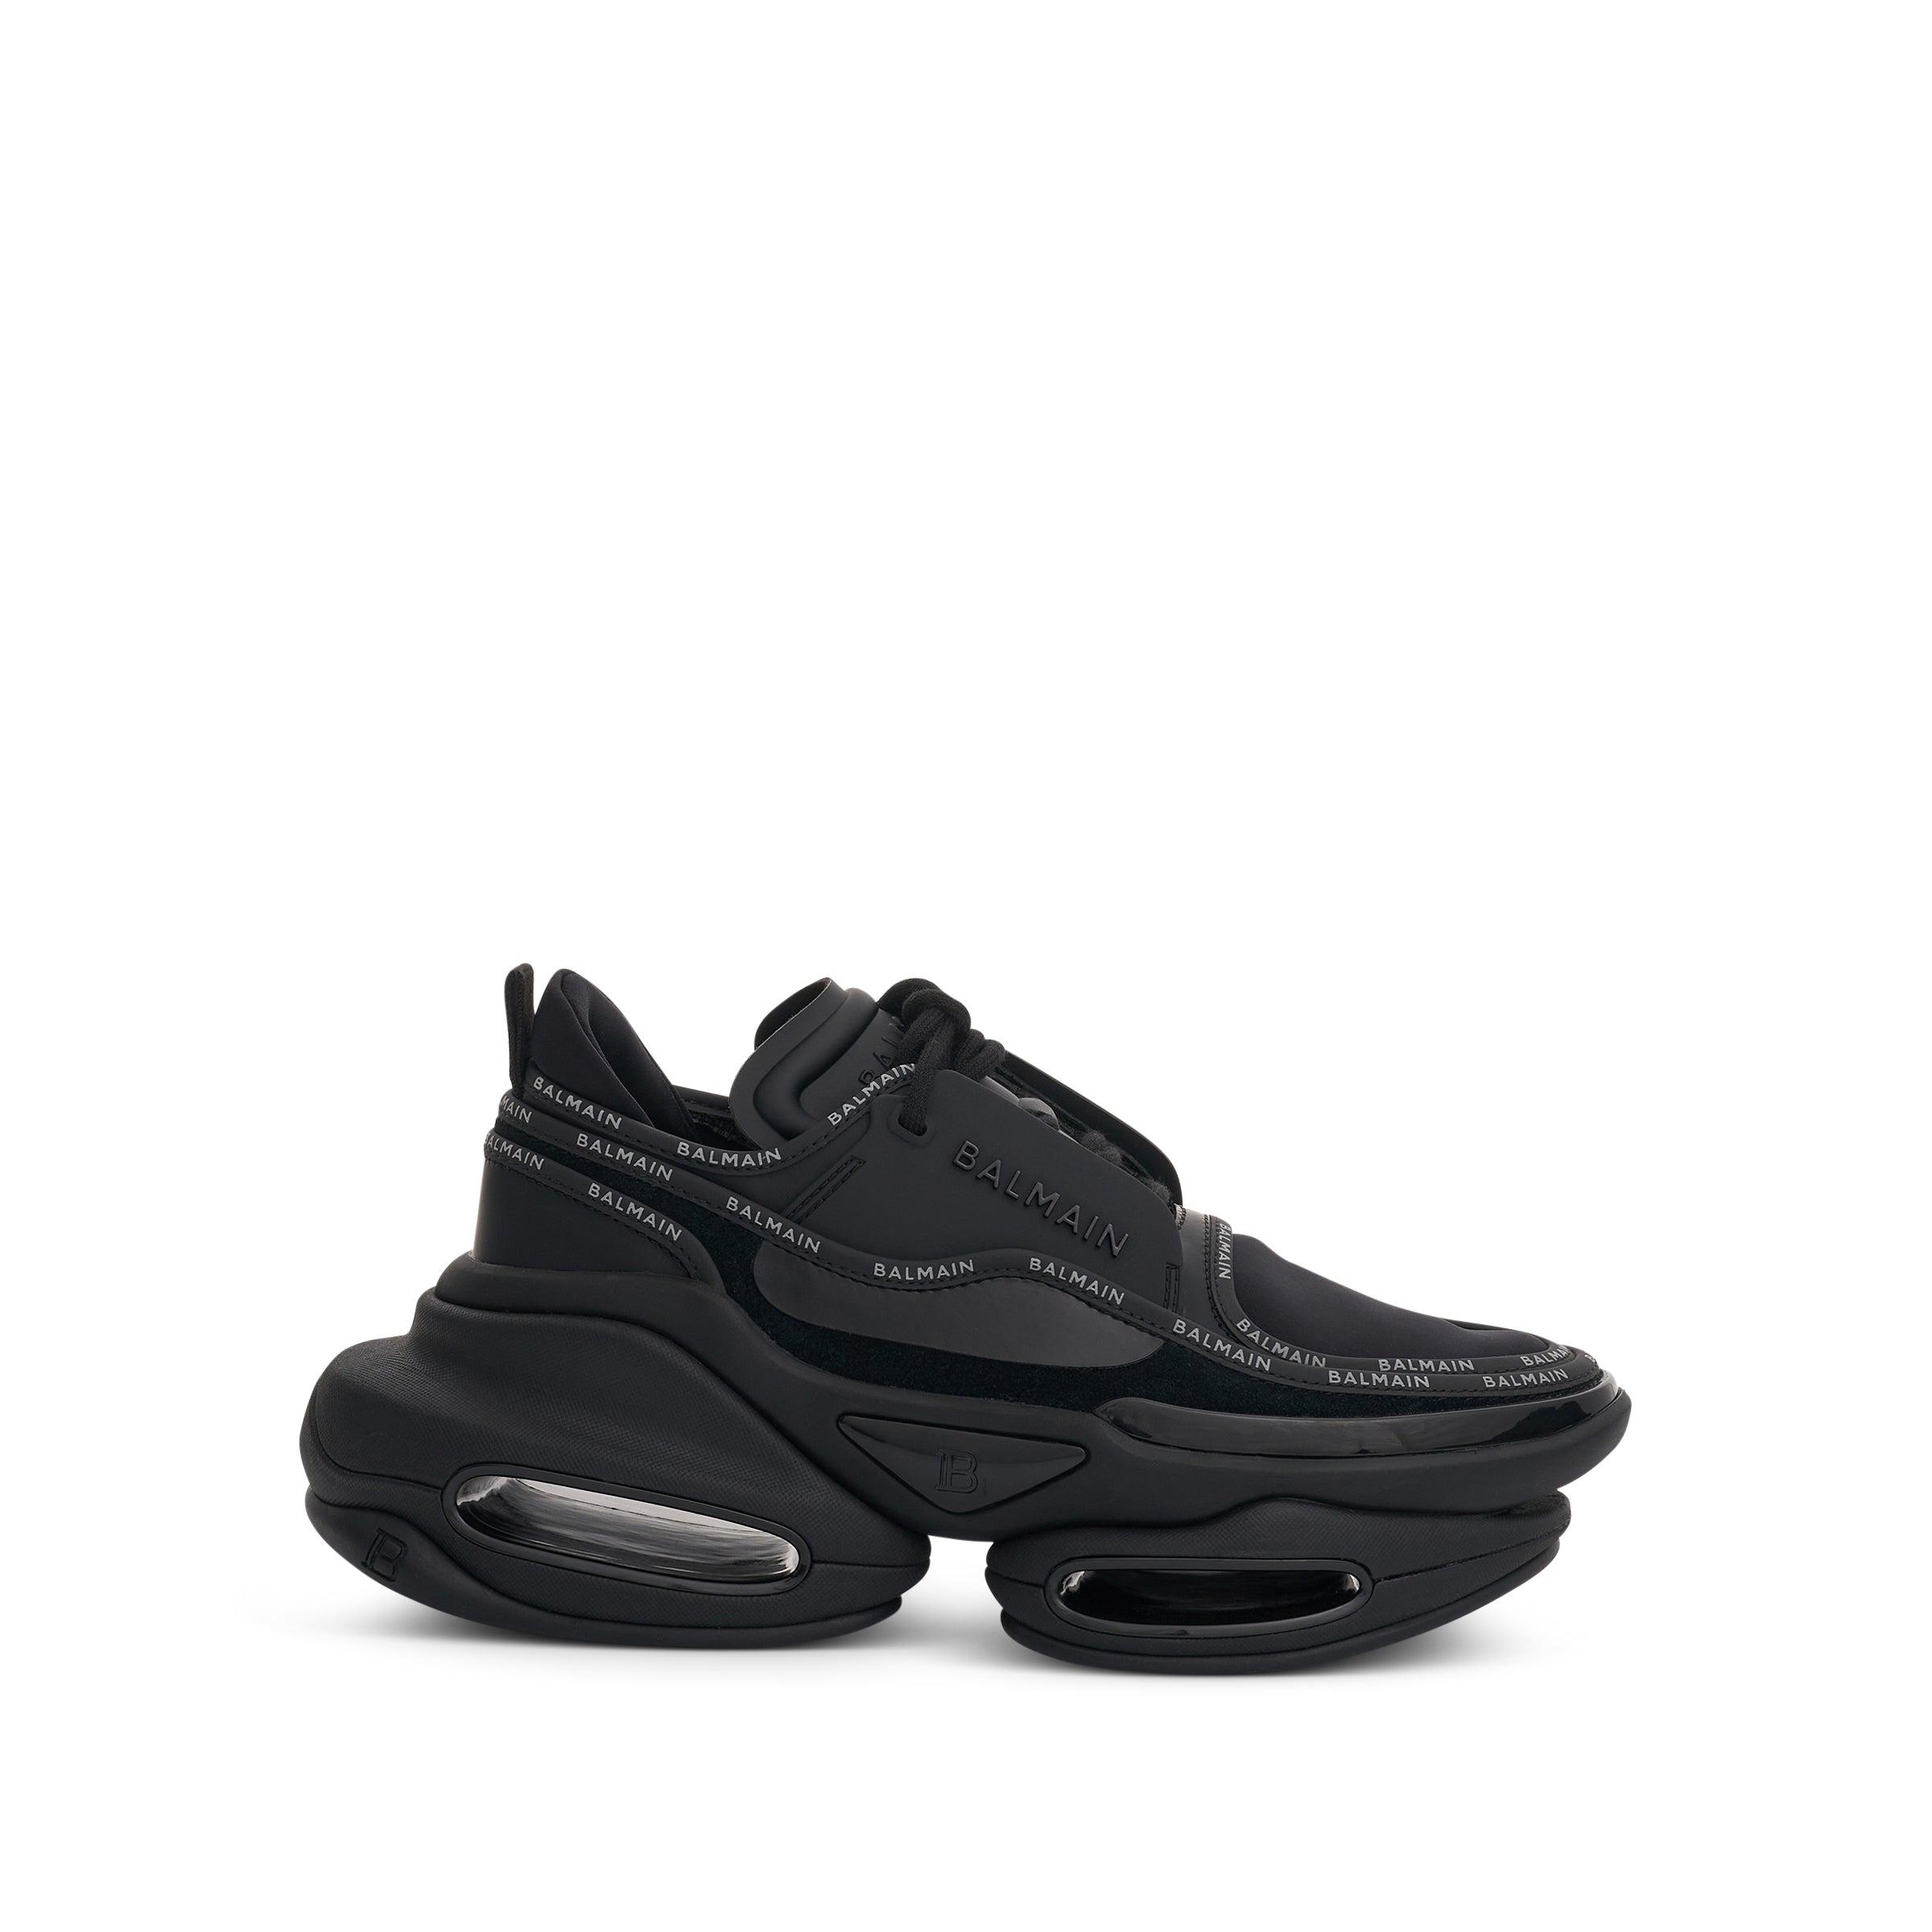 Balmain B Bold Low Rubberised Leather & Suede Sneaker In Black | Lyst